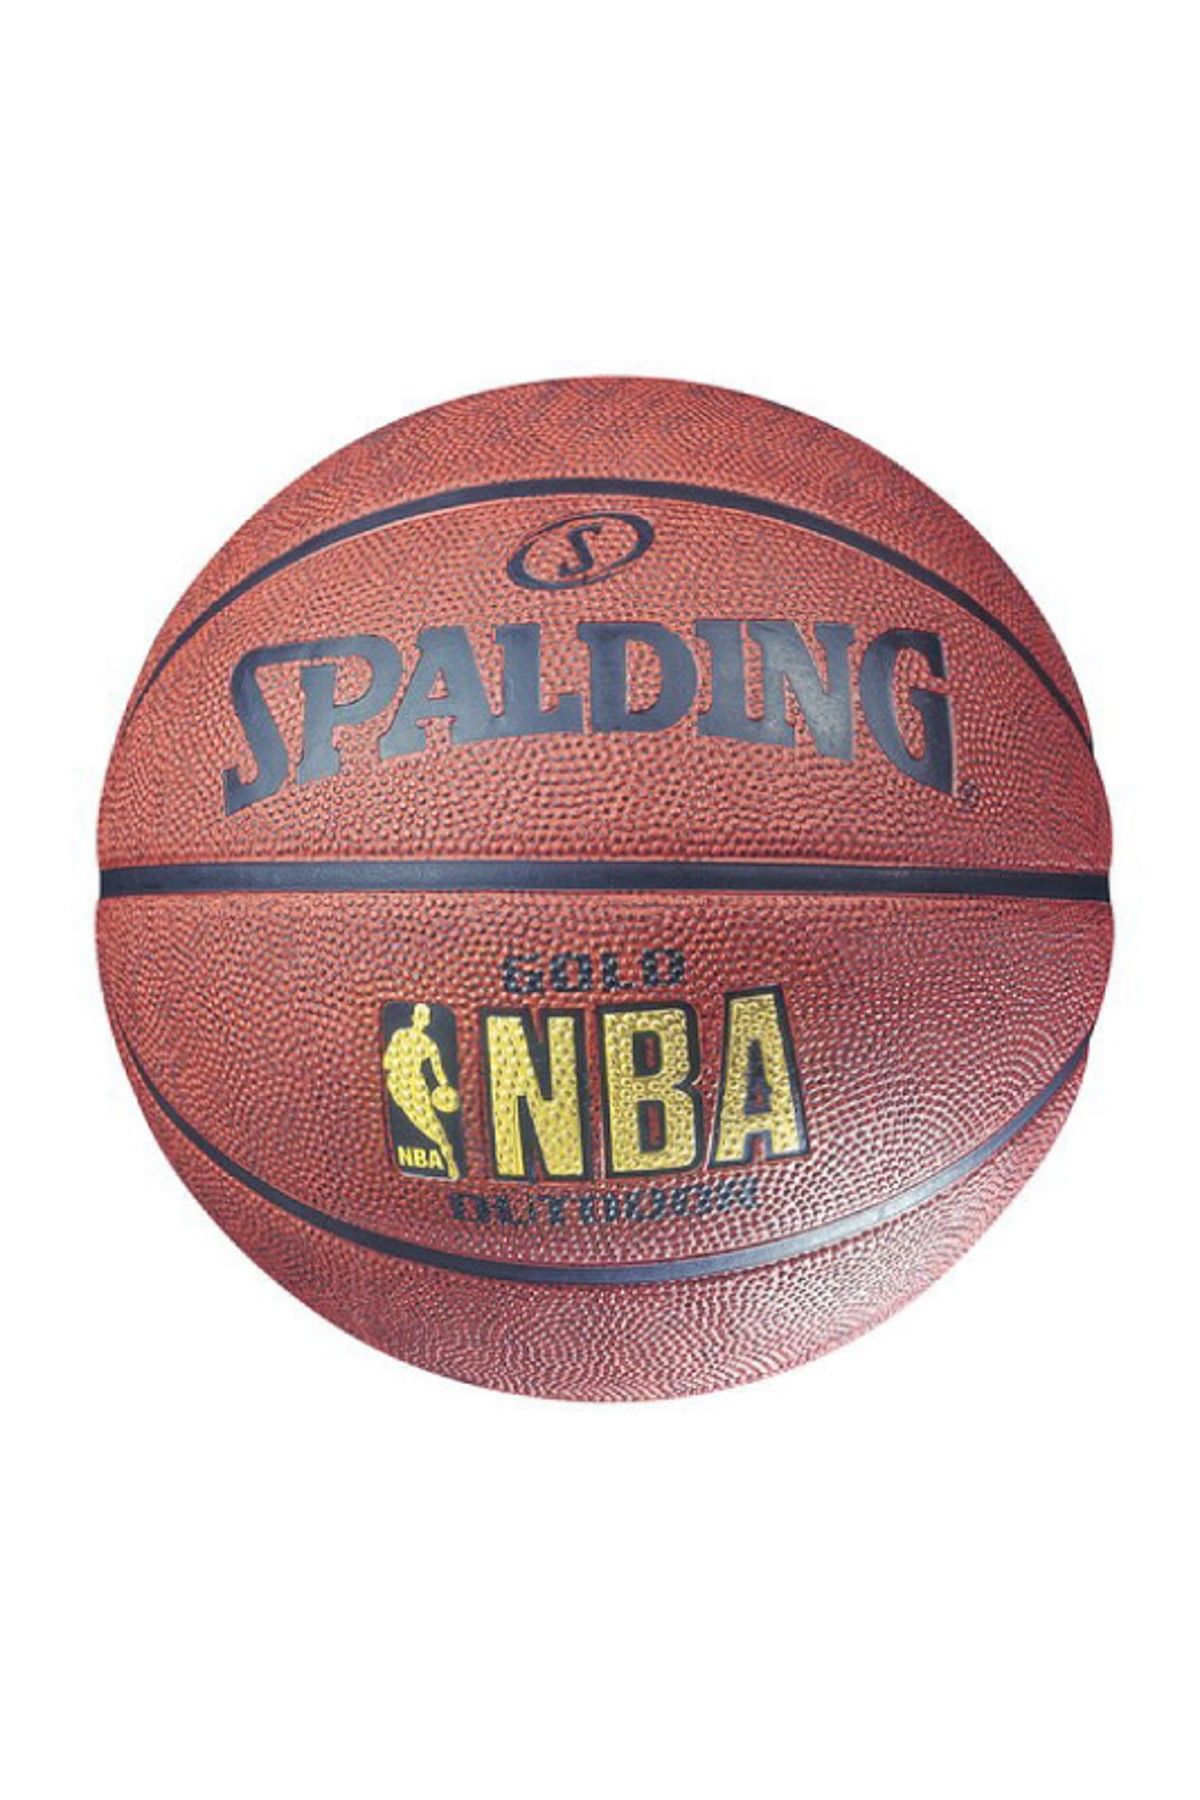 Spalding Basket Topu Nba Gold Outdoor Sz7 83-013Z (73-299) (63-760) TOPBSKSPA154